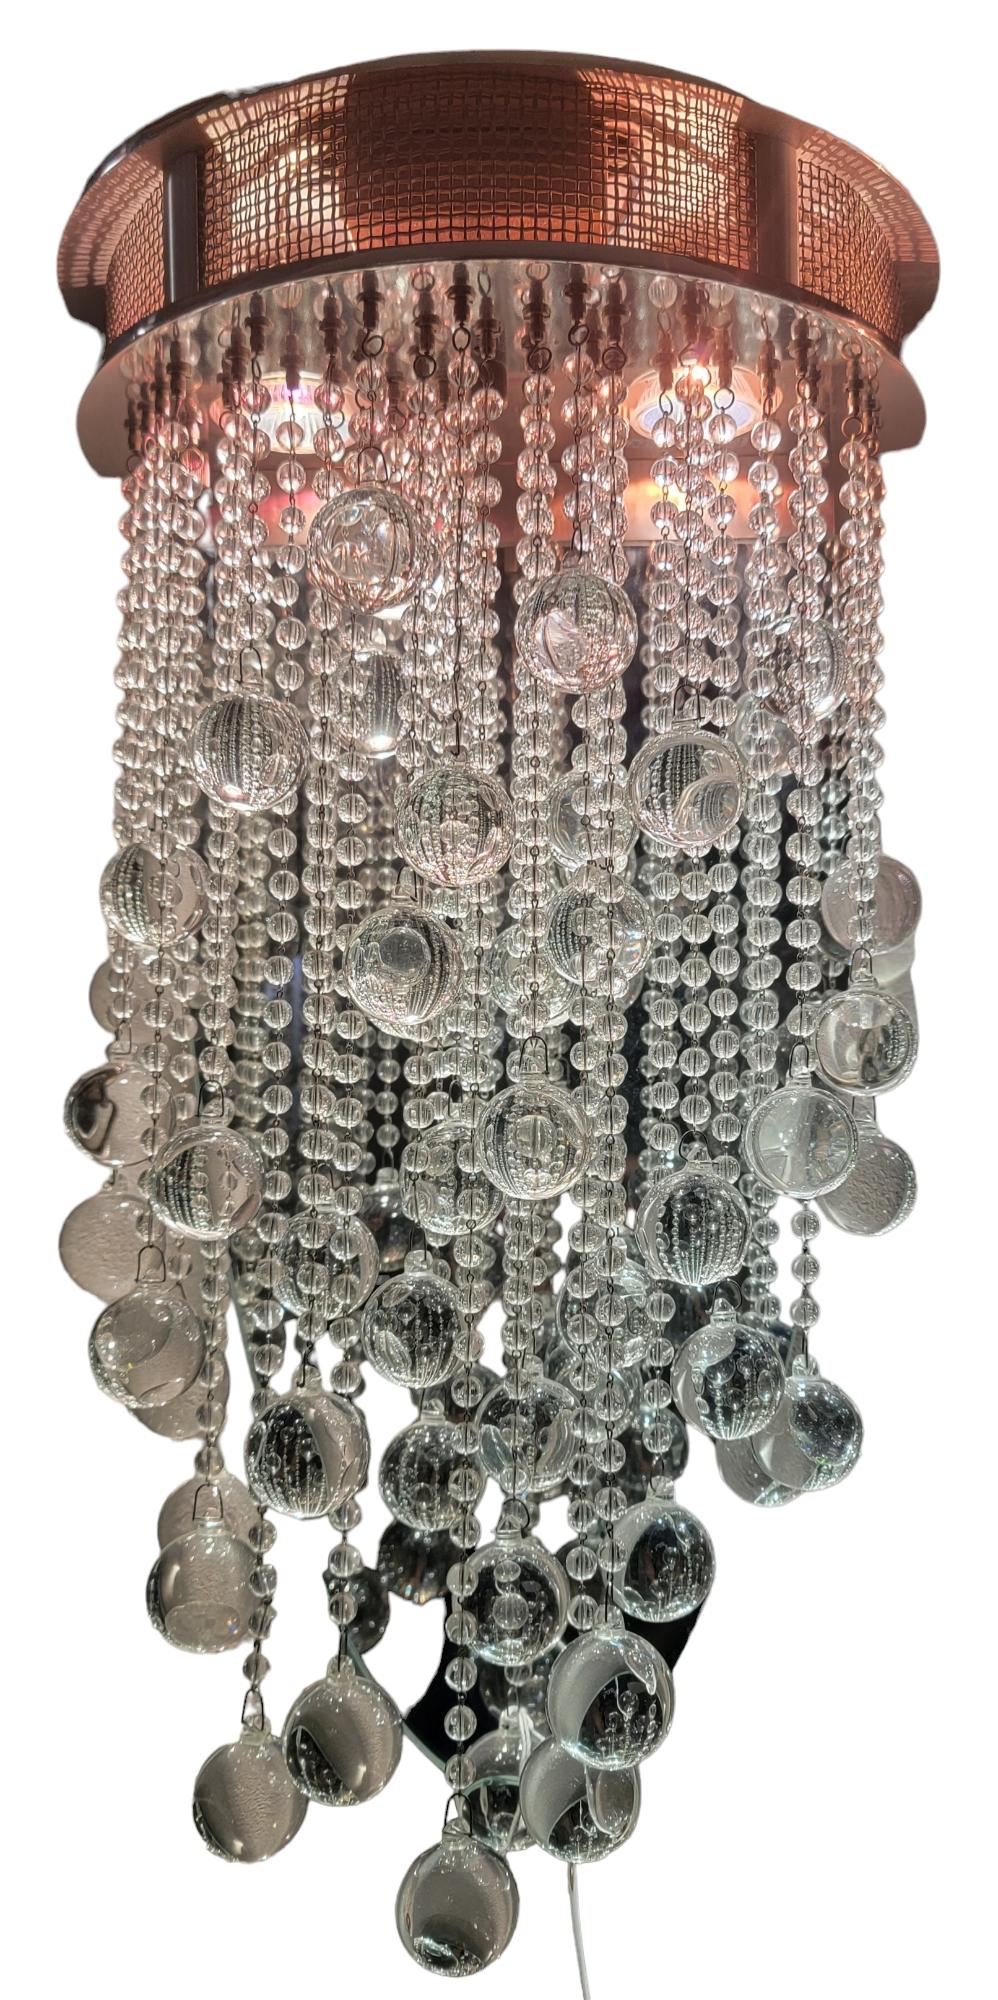 Ein Paar atemberaubende Todd Rugee-Leuchten. Im Rahmen befinden sich 2 LED-Lichter, die auf die hängenden Perlen mit je einer größeren Kristallkugel am Ende jeder Perle herunterleuchten. Der Rahmen besteht aus einem oberen Kupferrand und erstreckt